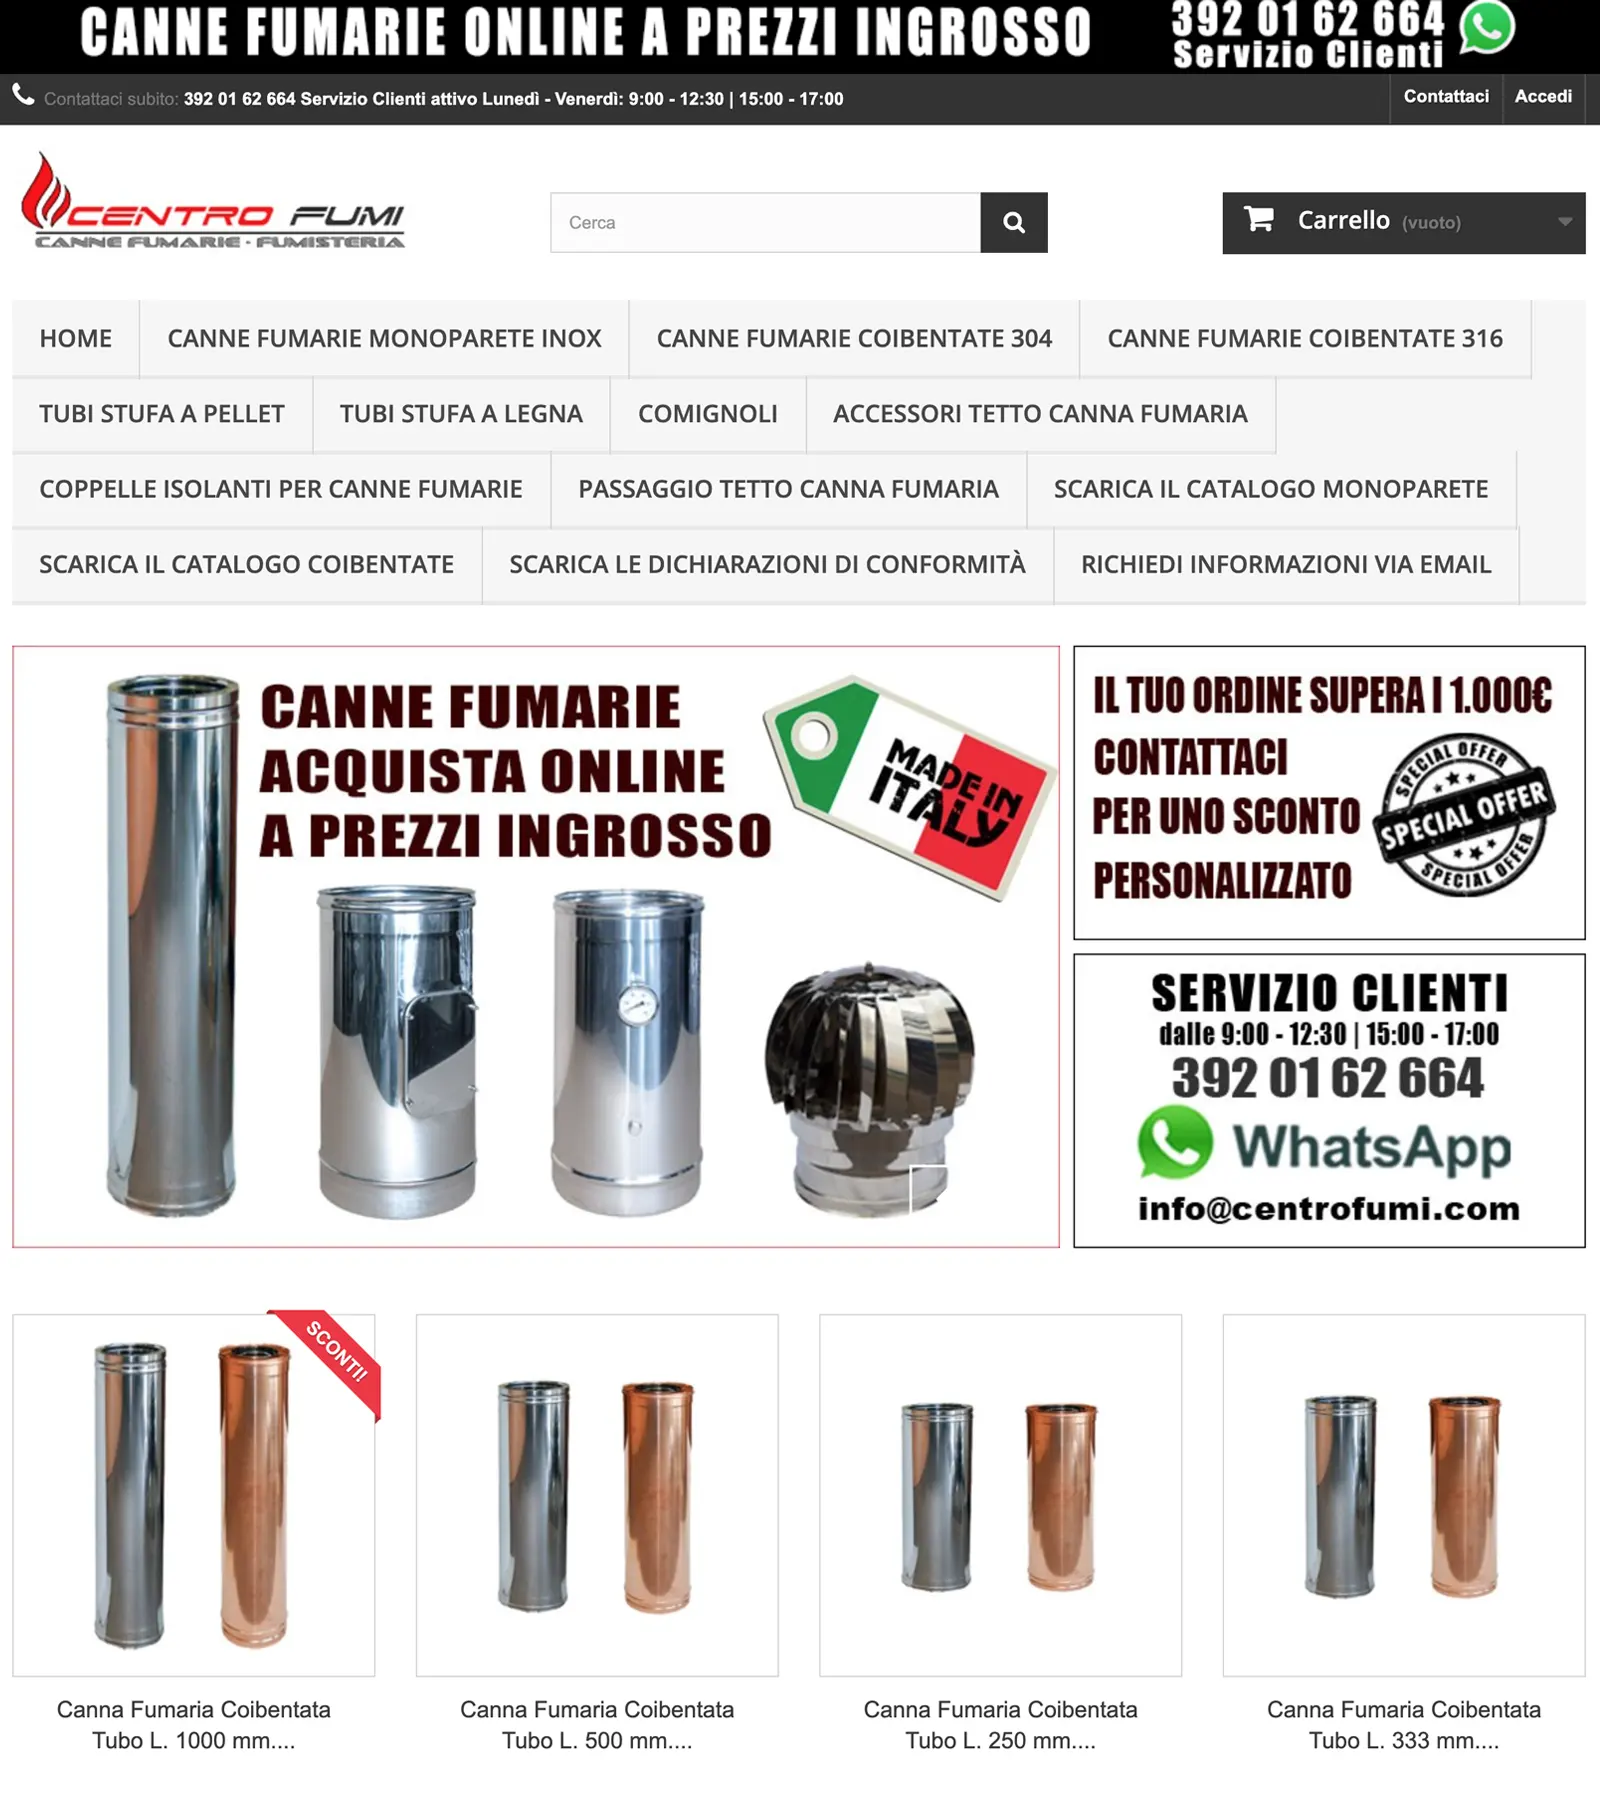 Portfolio Publivirtual - Web Agency Roma e Pescara, Progetto Centro Fumi